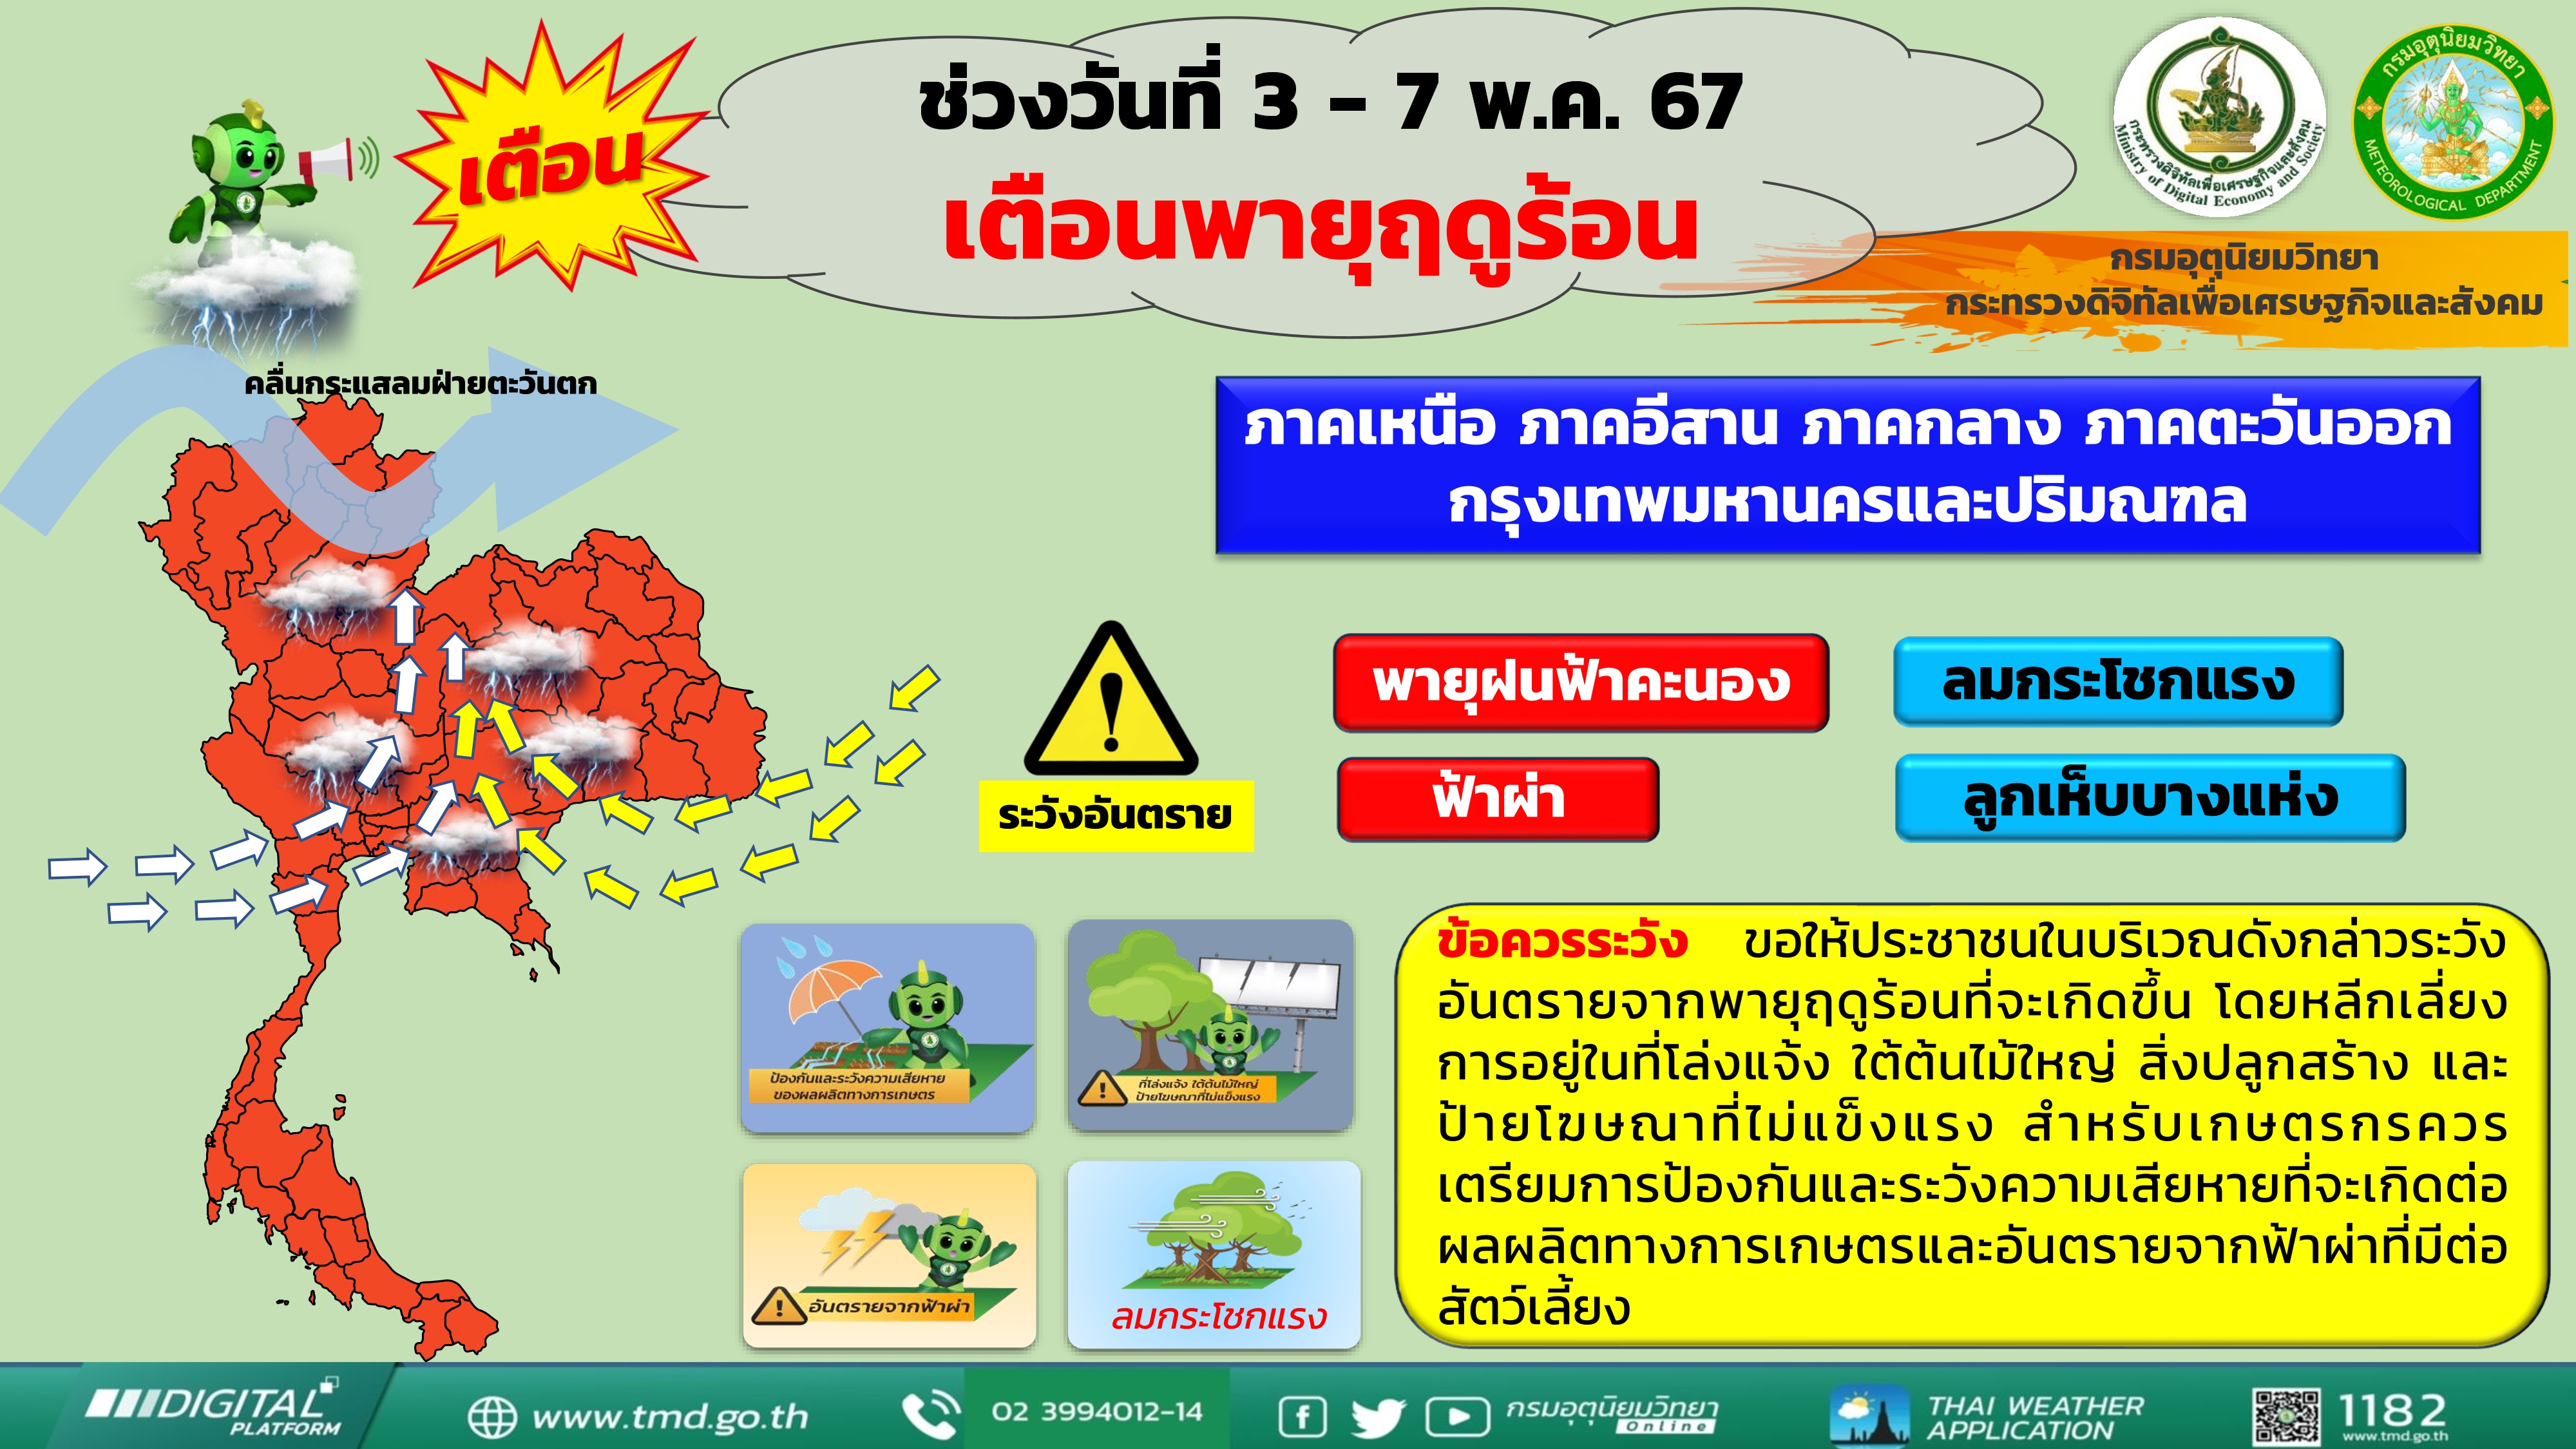 เตือน พายุฤดูร้อนบริเวณประเทศไทยตอนบน 3-7 พ.ค. 67